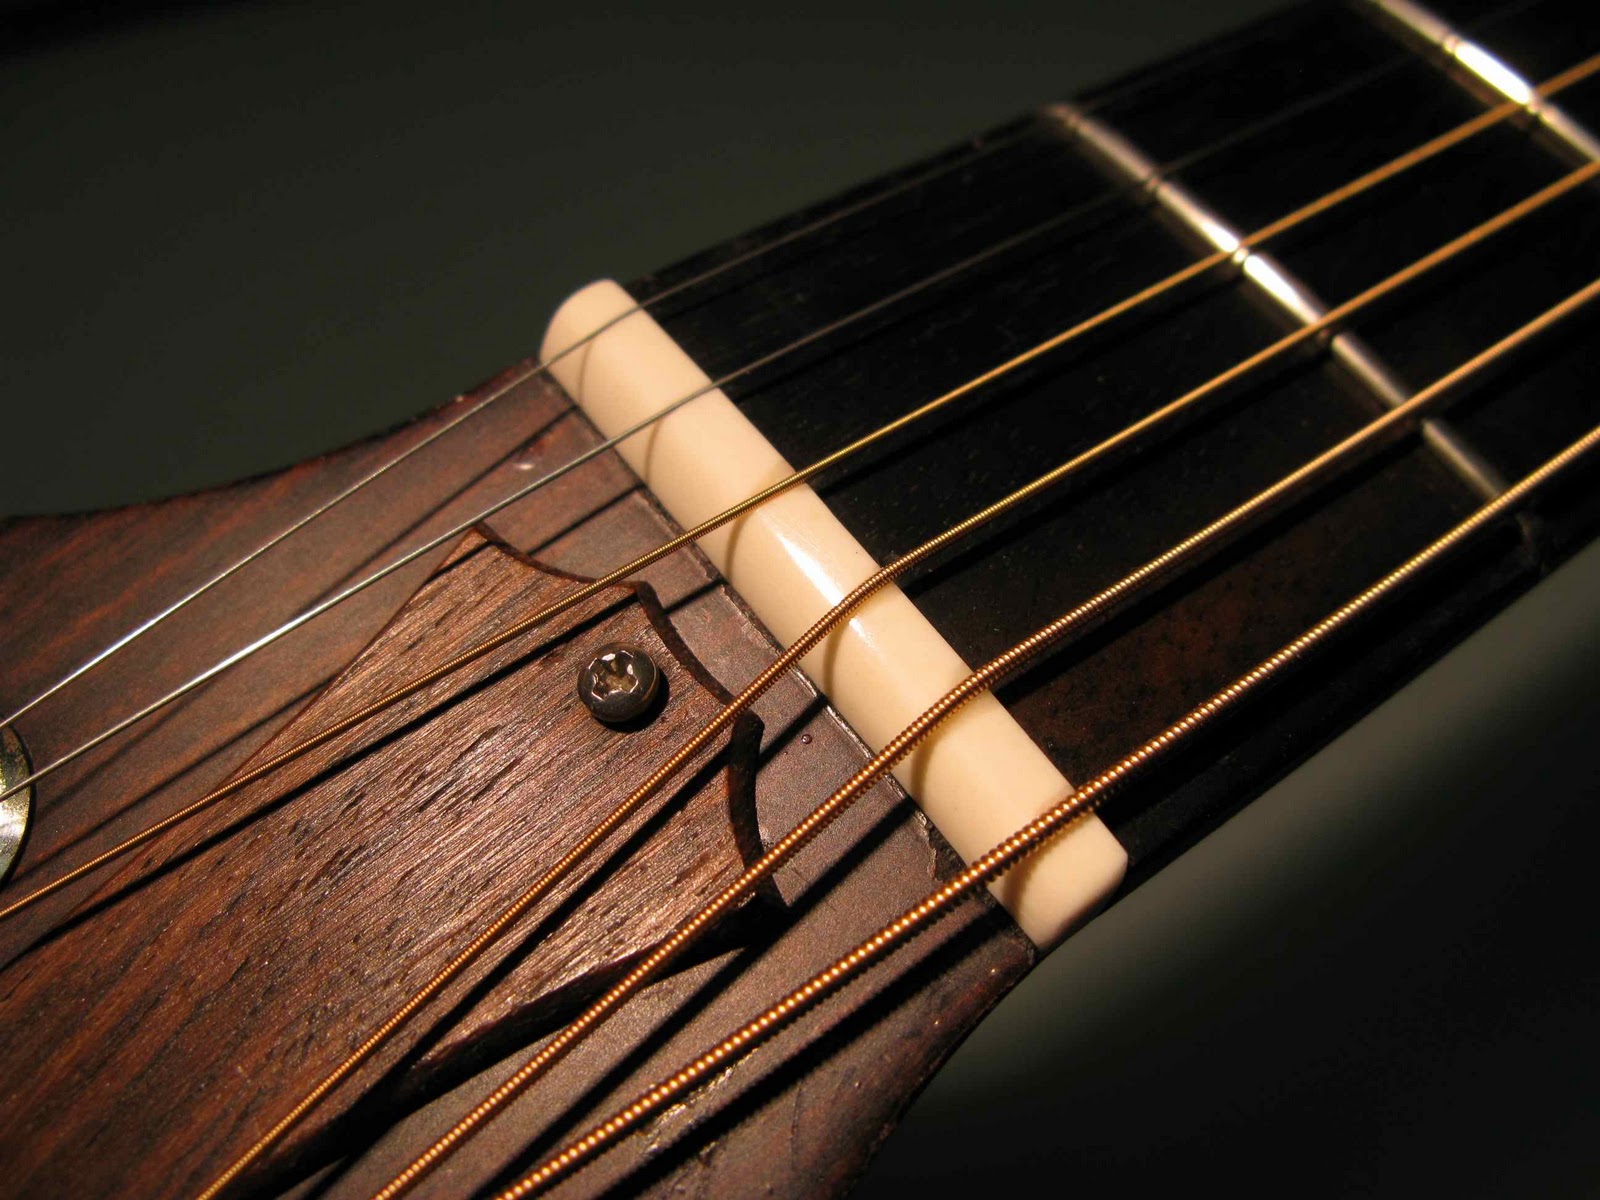 Réglage de la guitare électrique : manche, cordes, intonation